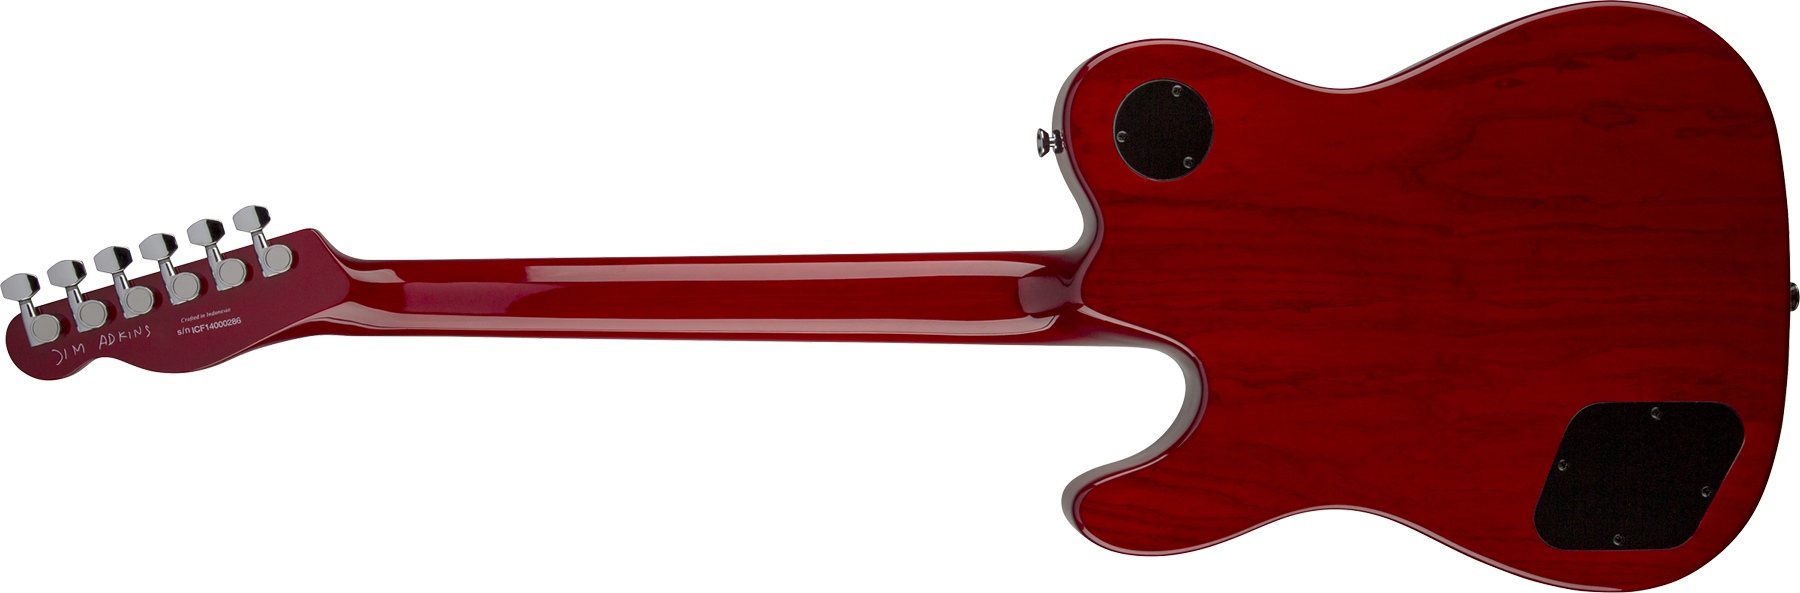 Fender Jim Adkins Tele Ja-90 Mex Signature 2p90 Lau - Crimson Red Transparent - E-Gitarre in Teleform - Variation 1